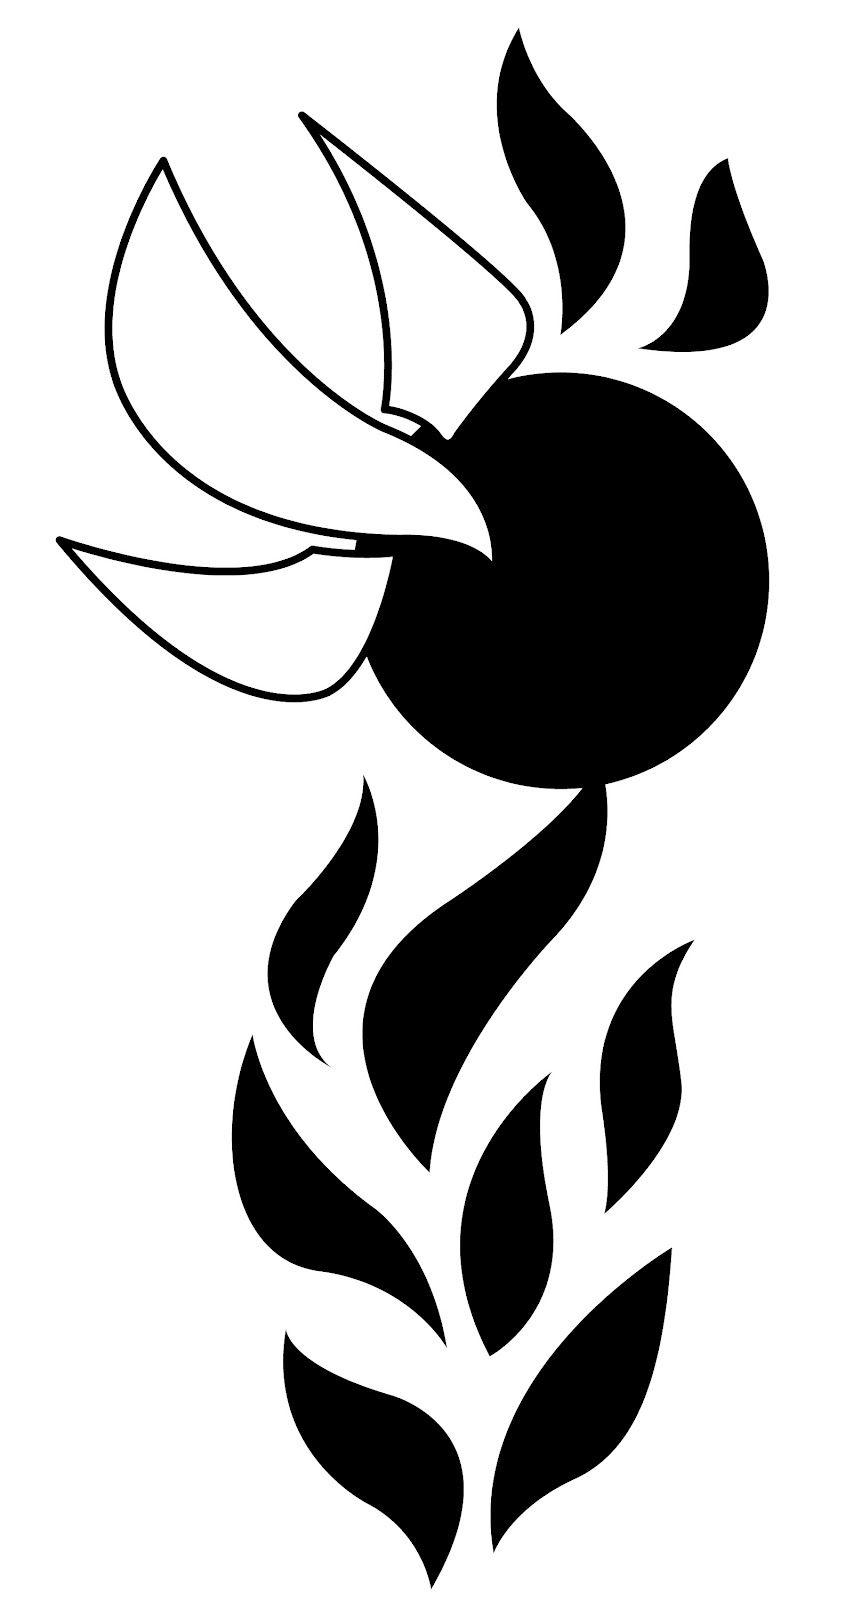 Spirit Black and White Logo - Free Spirit Cliparts, Download Free Clip Art, Free Clip Art on ...